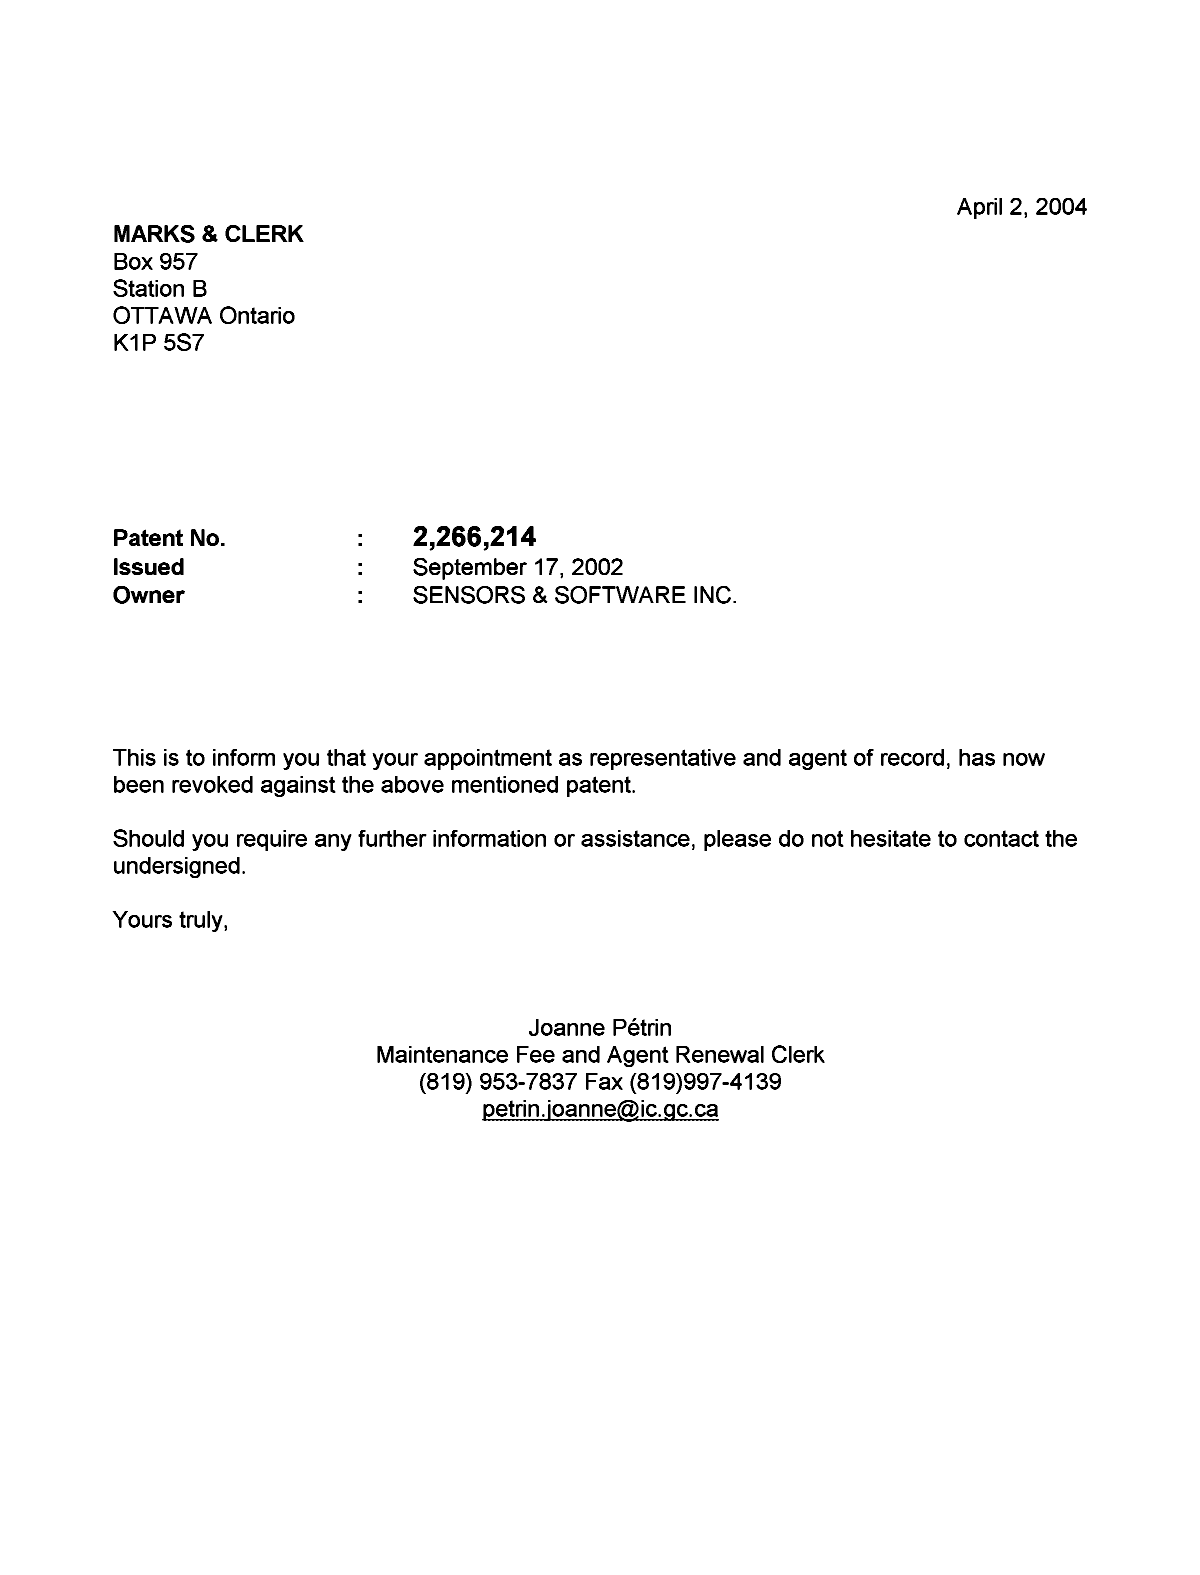 Document de brevet canadien 2266214. Correspondance 20040402. Image 1 de 1